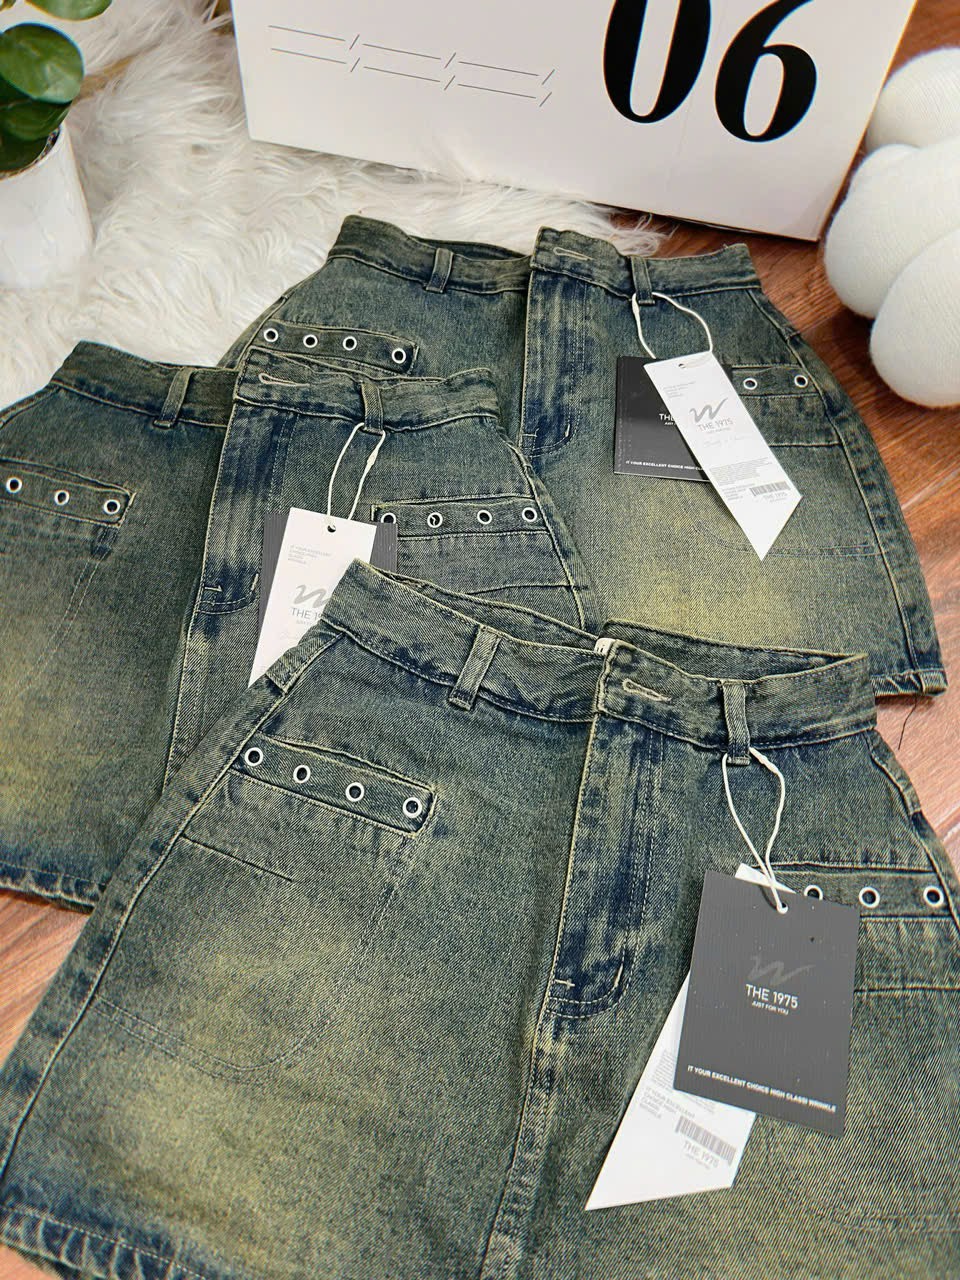 Chân váy chữ a dáng ngắn Cun Fashion chất liệu jean cotton dày dặn,size S/M/L chuẩn form, kèm lót trong thời trang MQC5